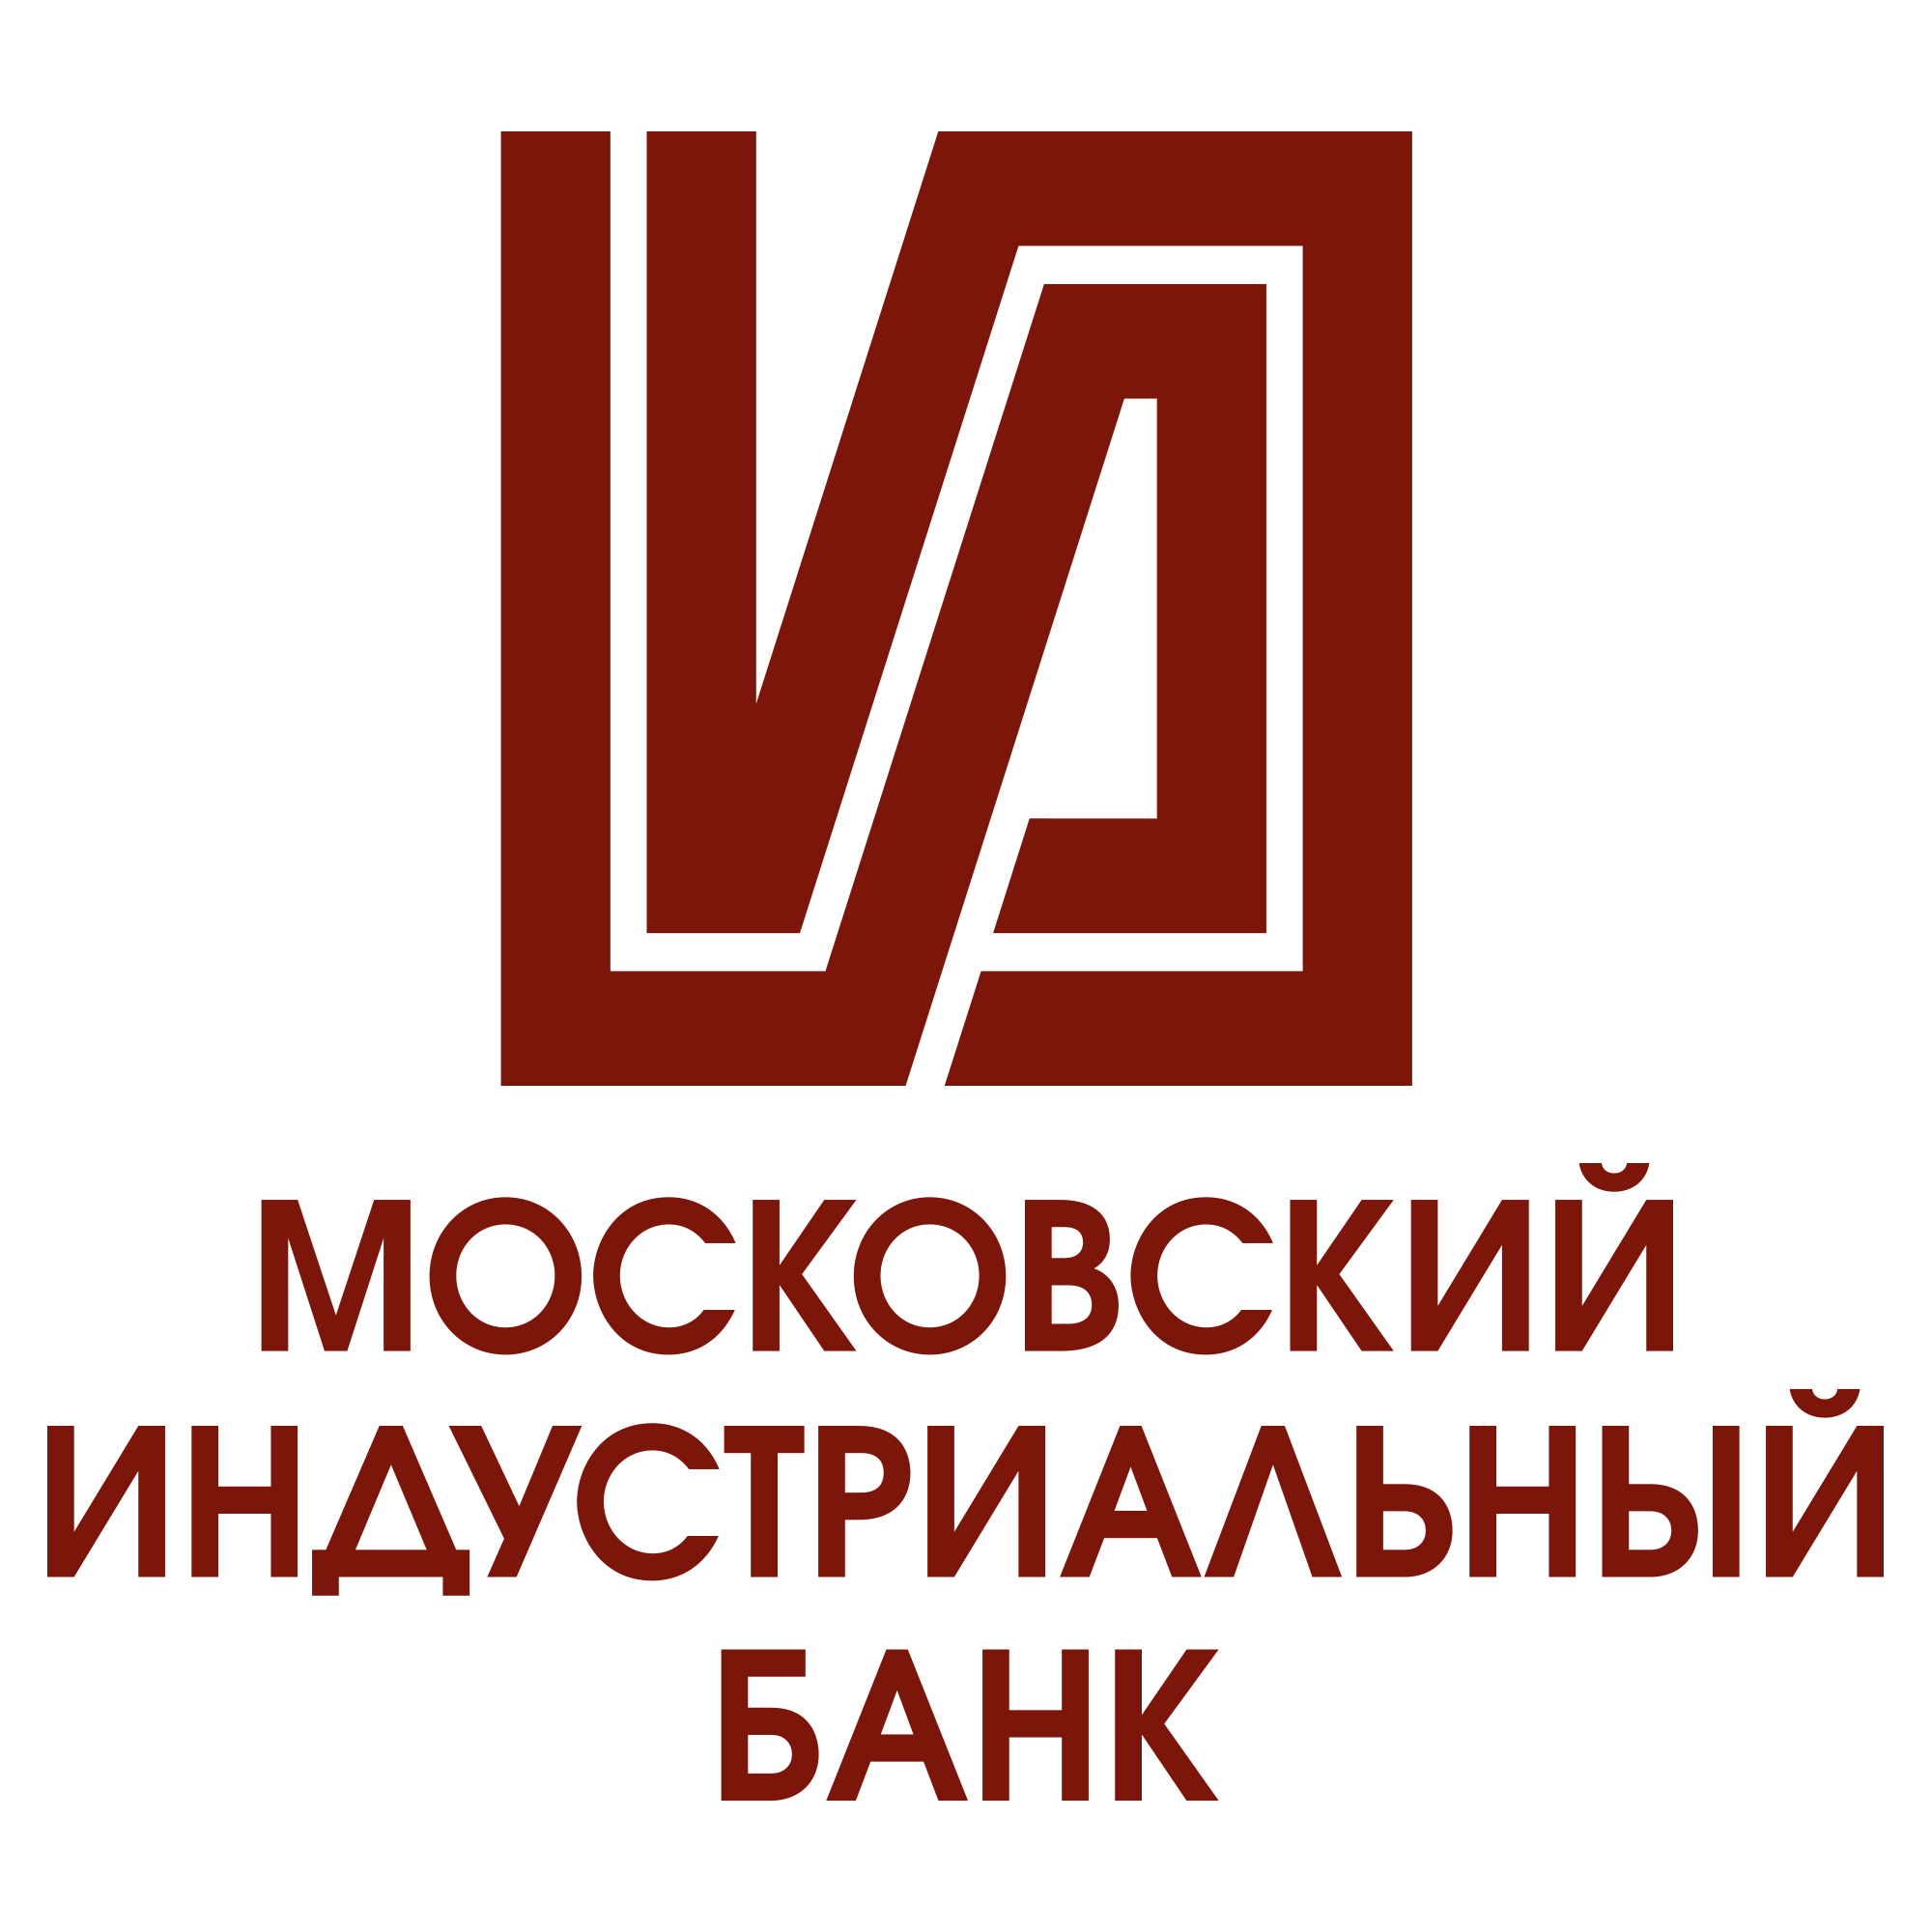 Казенное учреждение архангельской области. АОСД логотип.